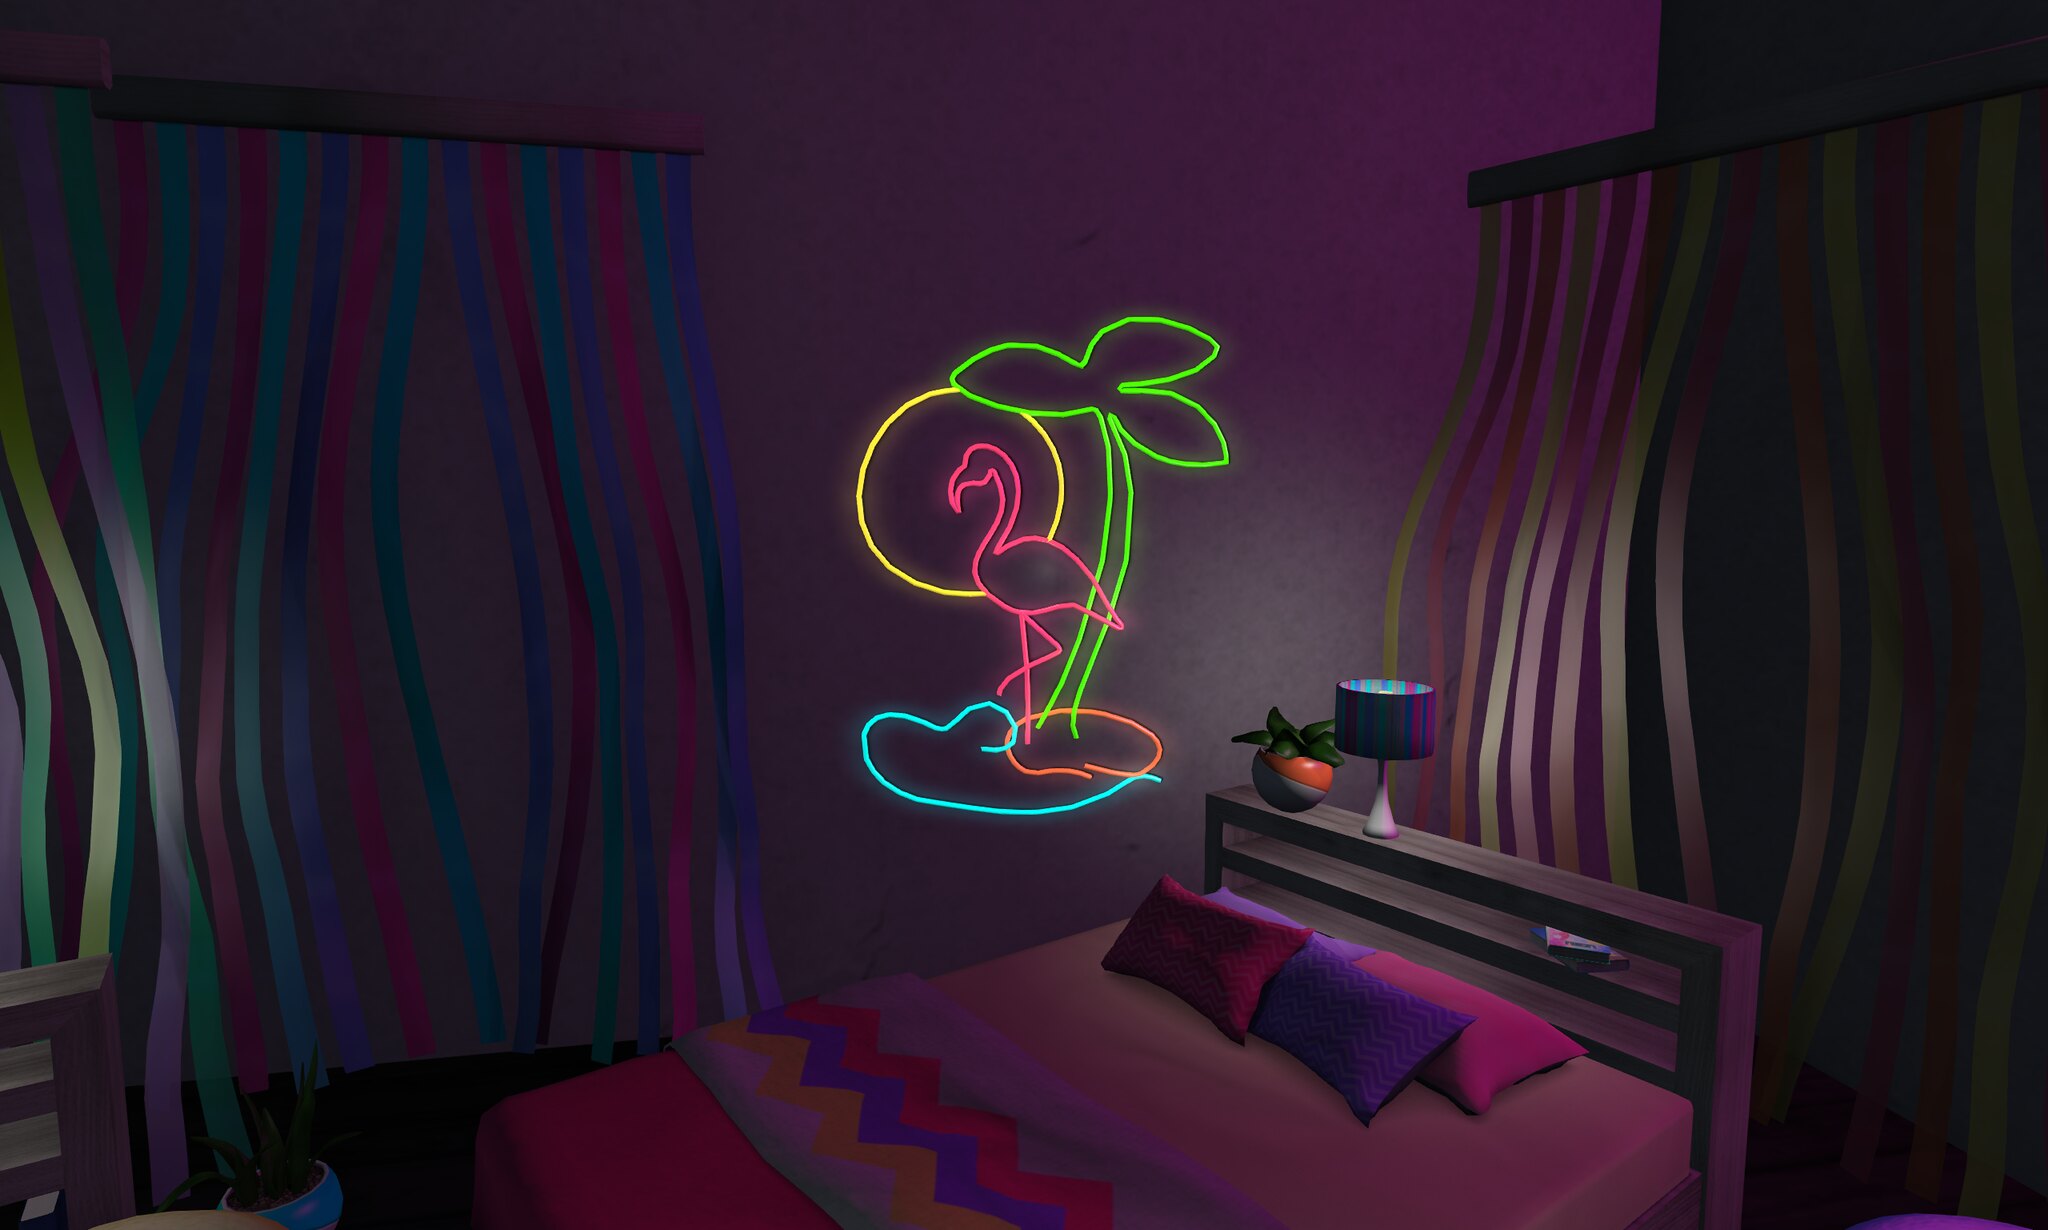 Os letreiros e as luminárias neon adicionam personalidade aos ambientes, criando um ponto focal no quarto